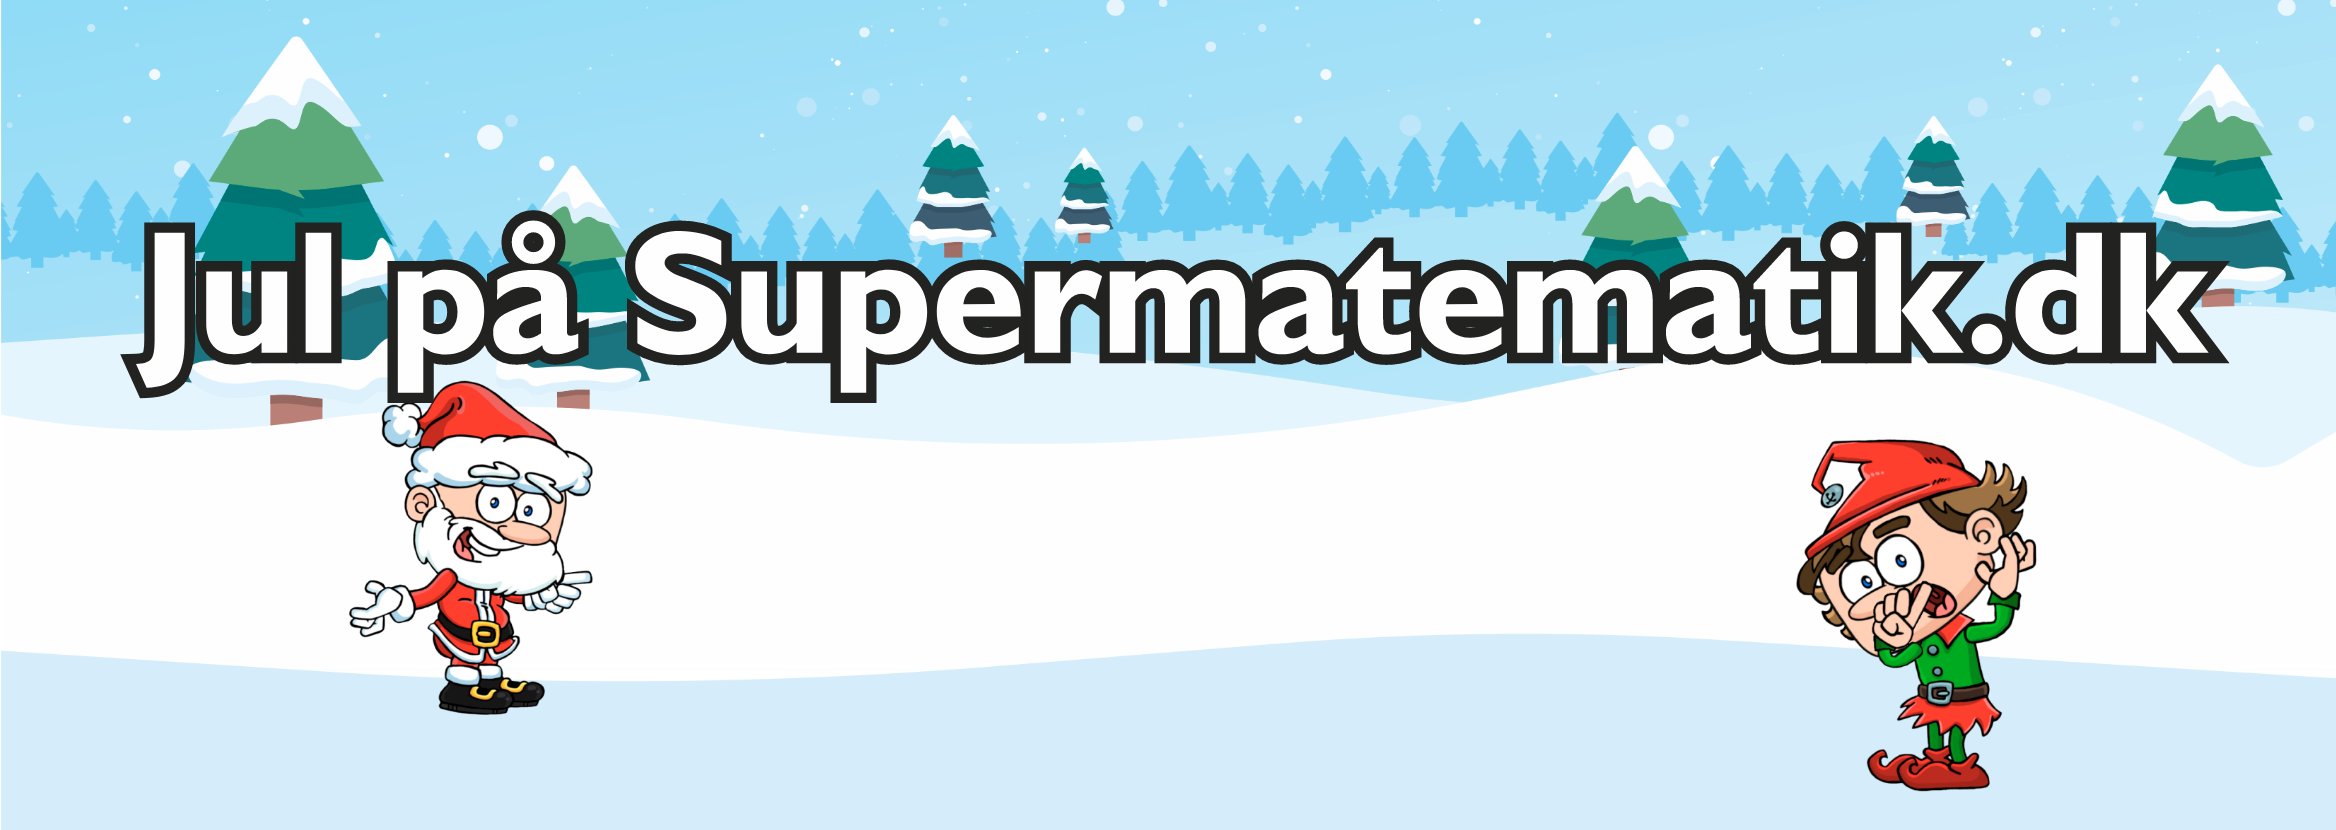 Jul på Supermatematik.dk